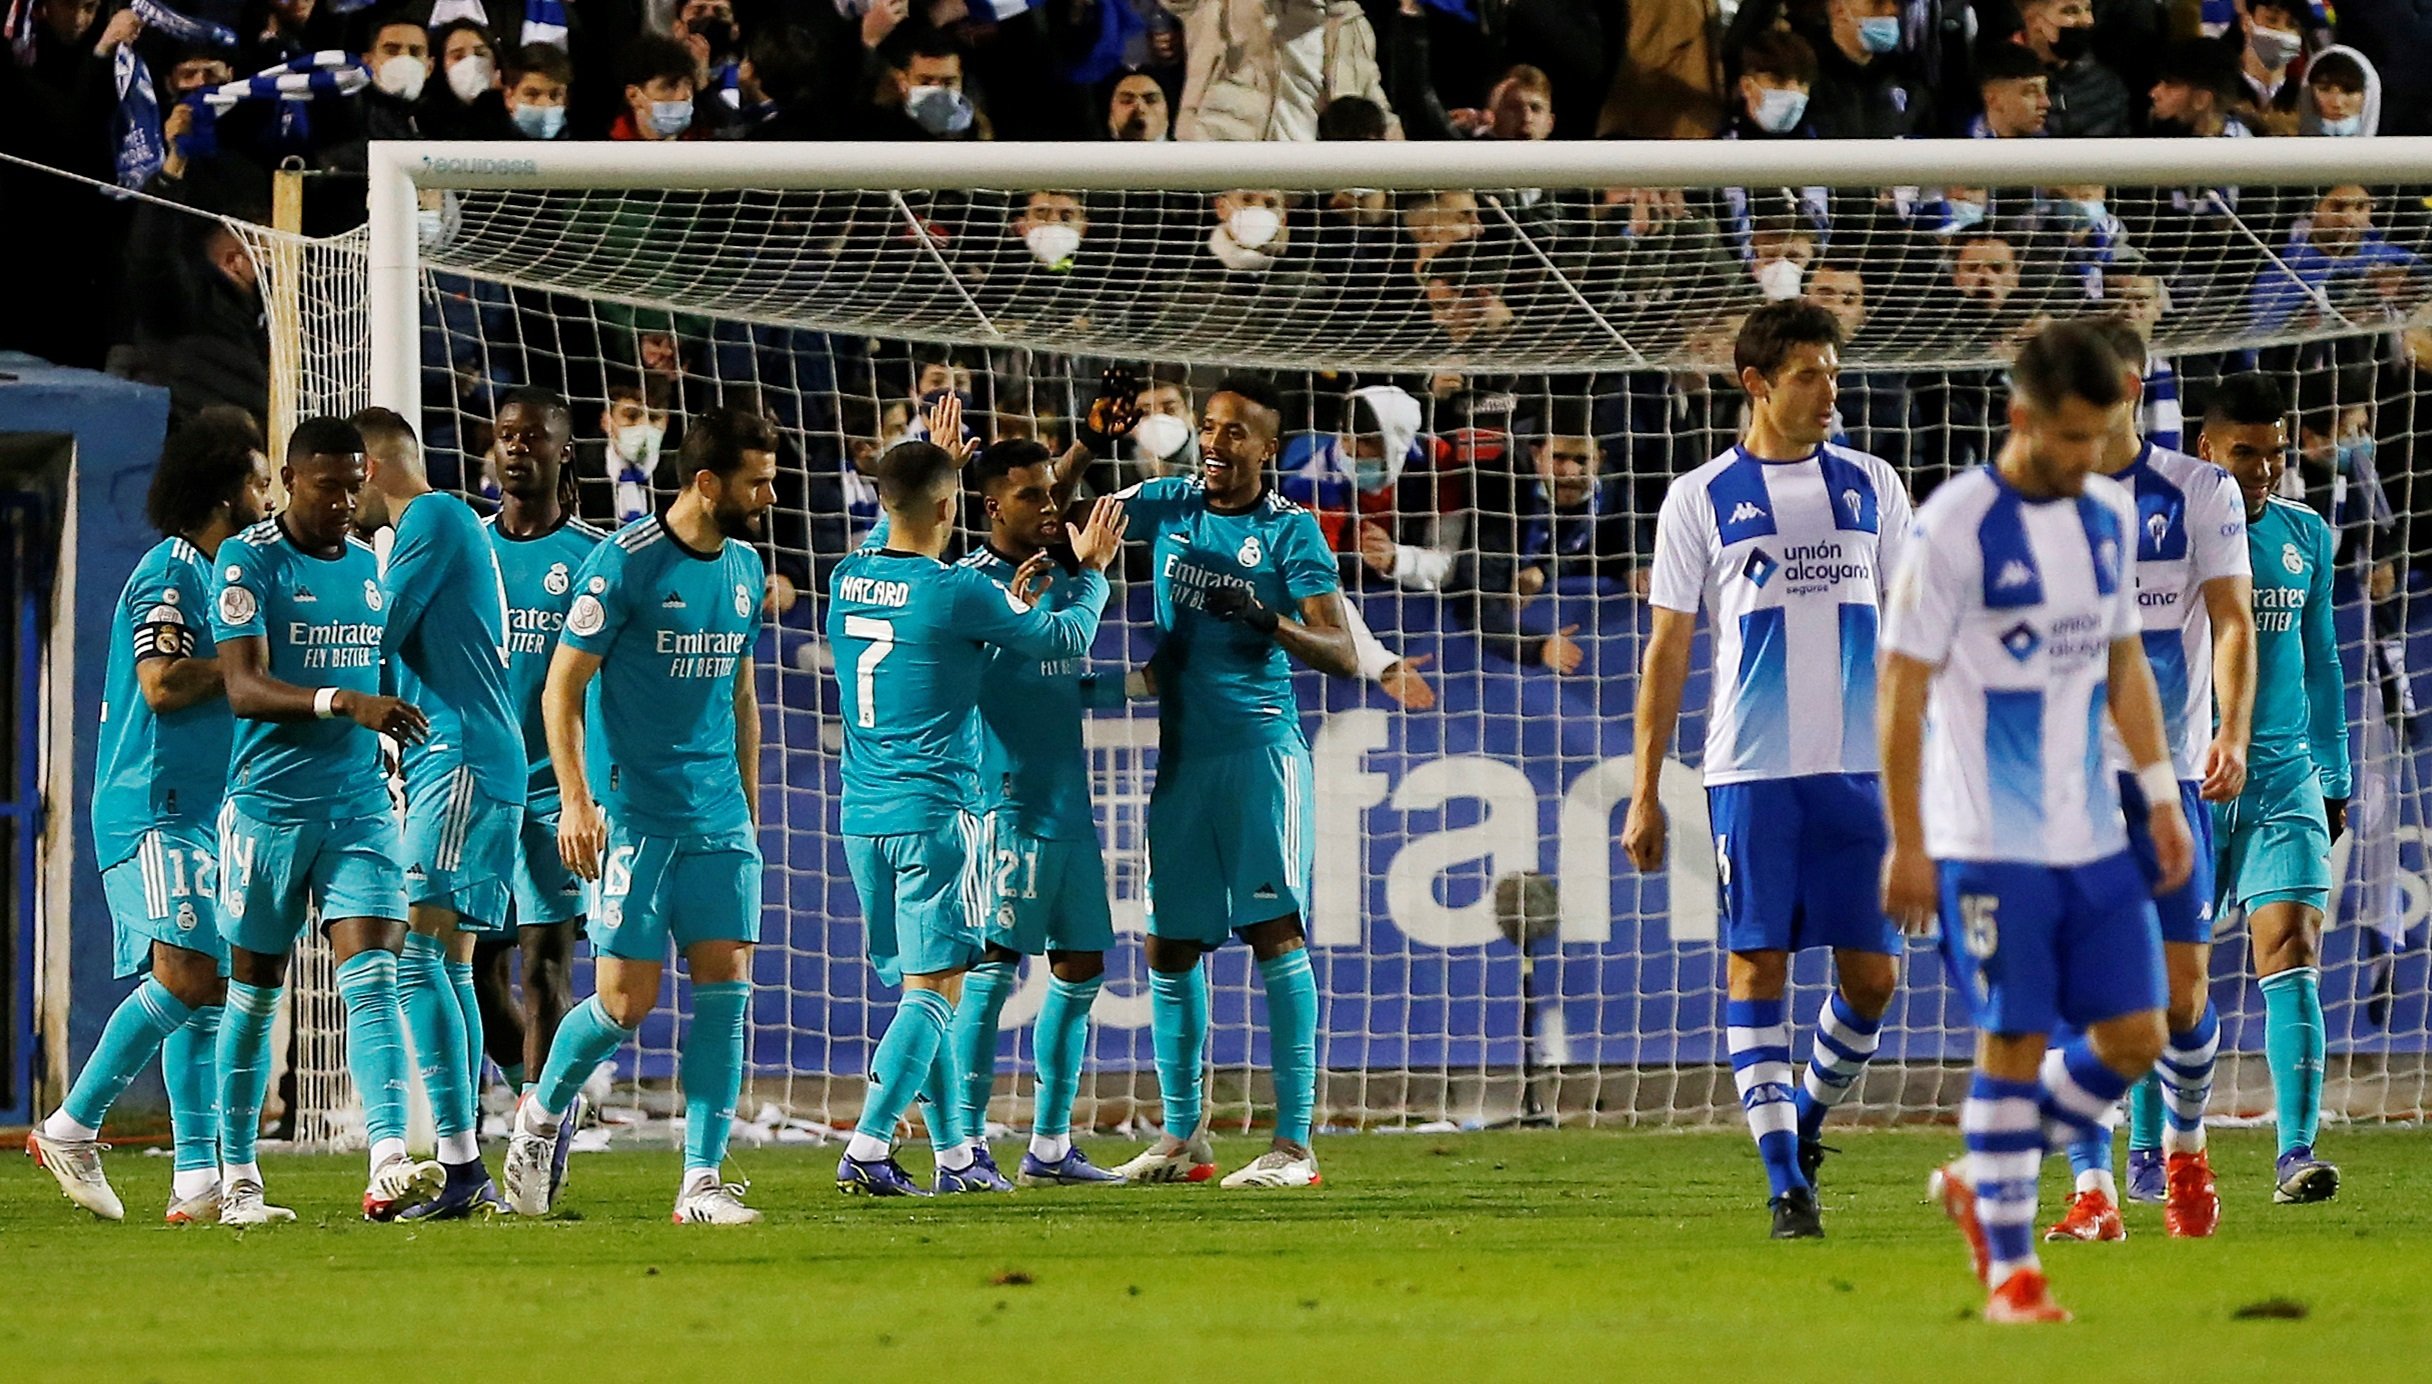 El Real Madrid gana con suerte y evita repetir ridículo contra el Alcoyano (1-3)